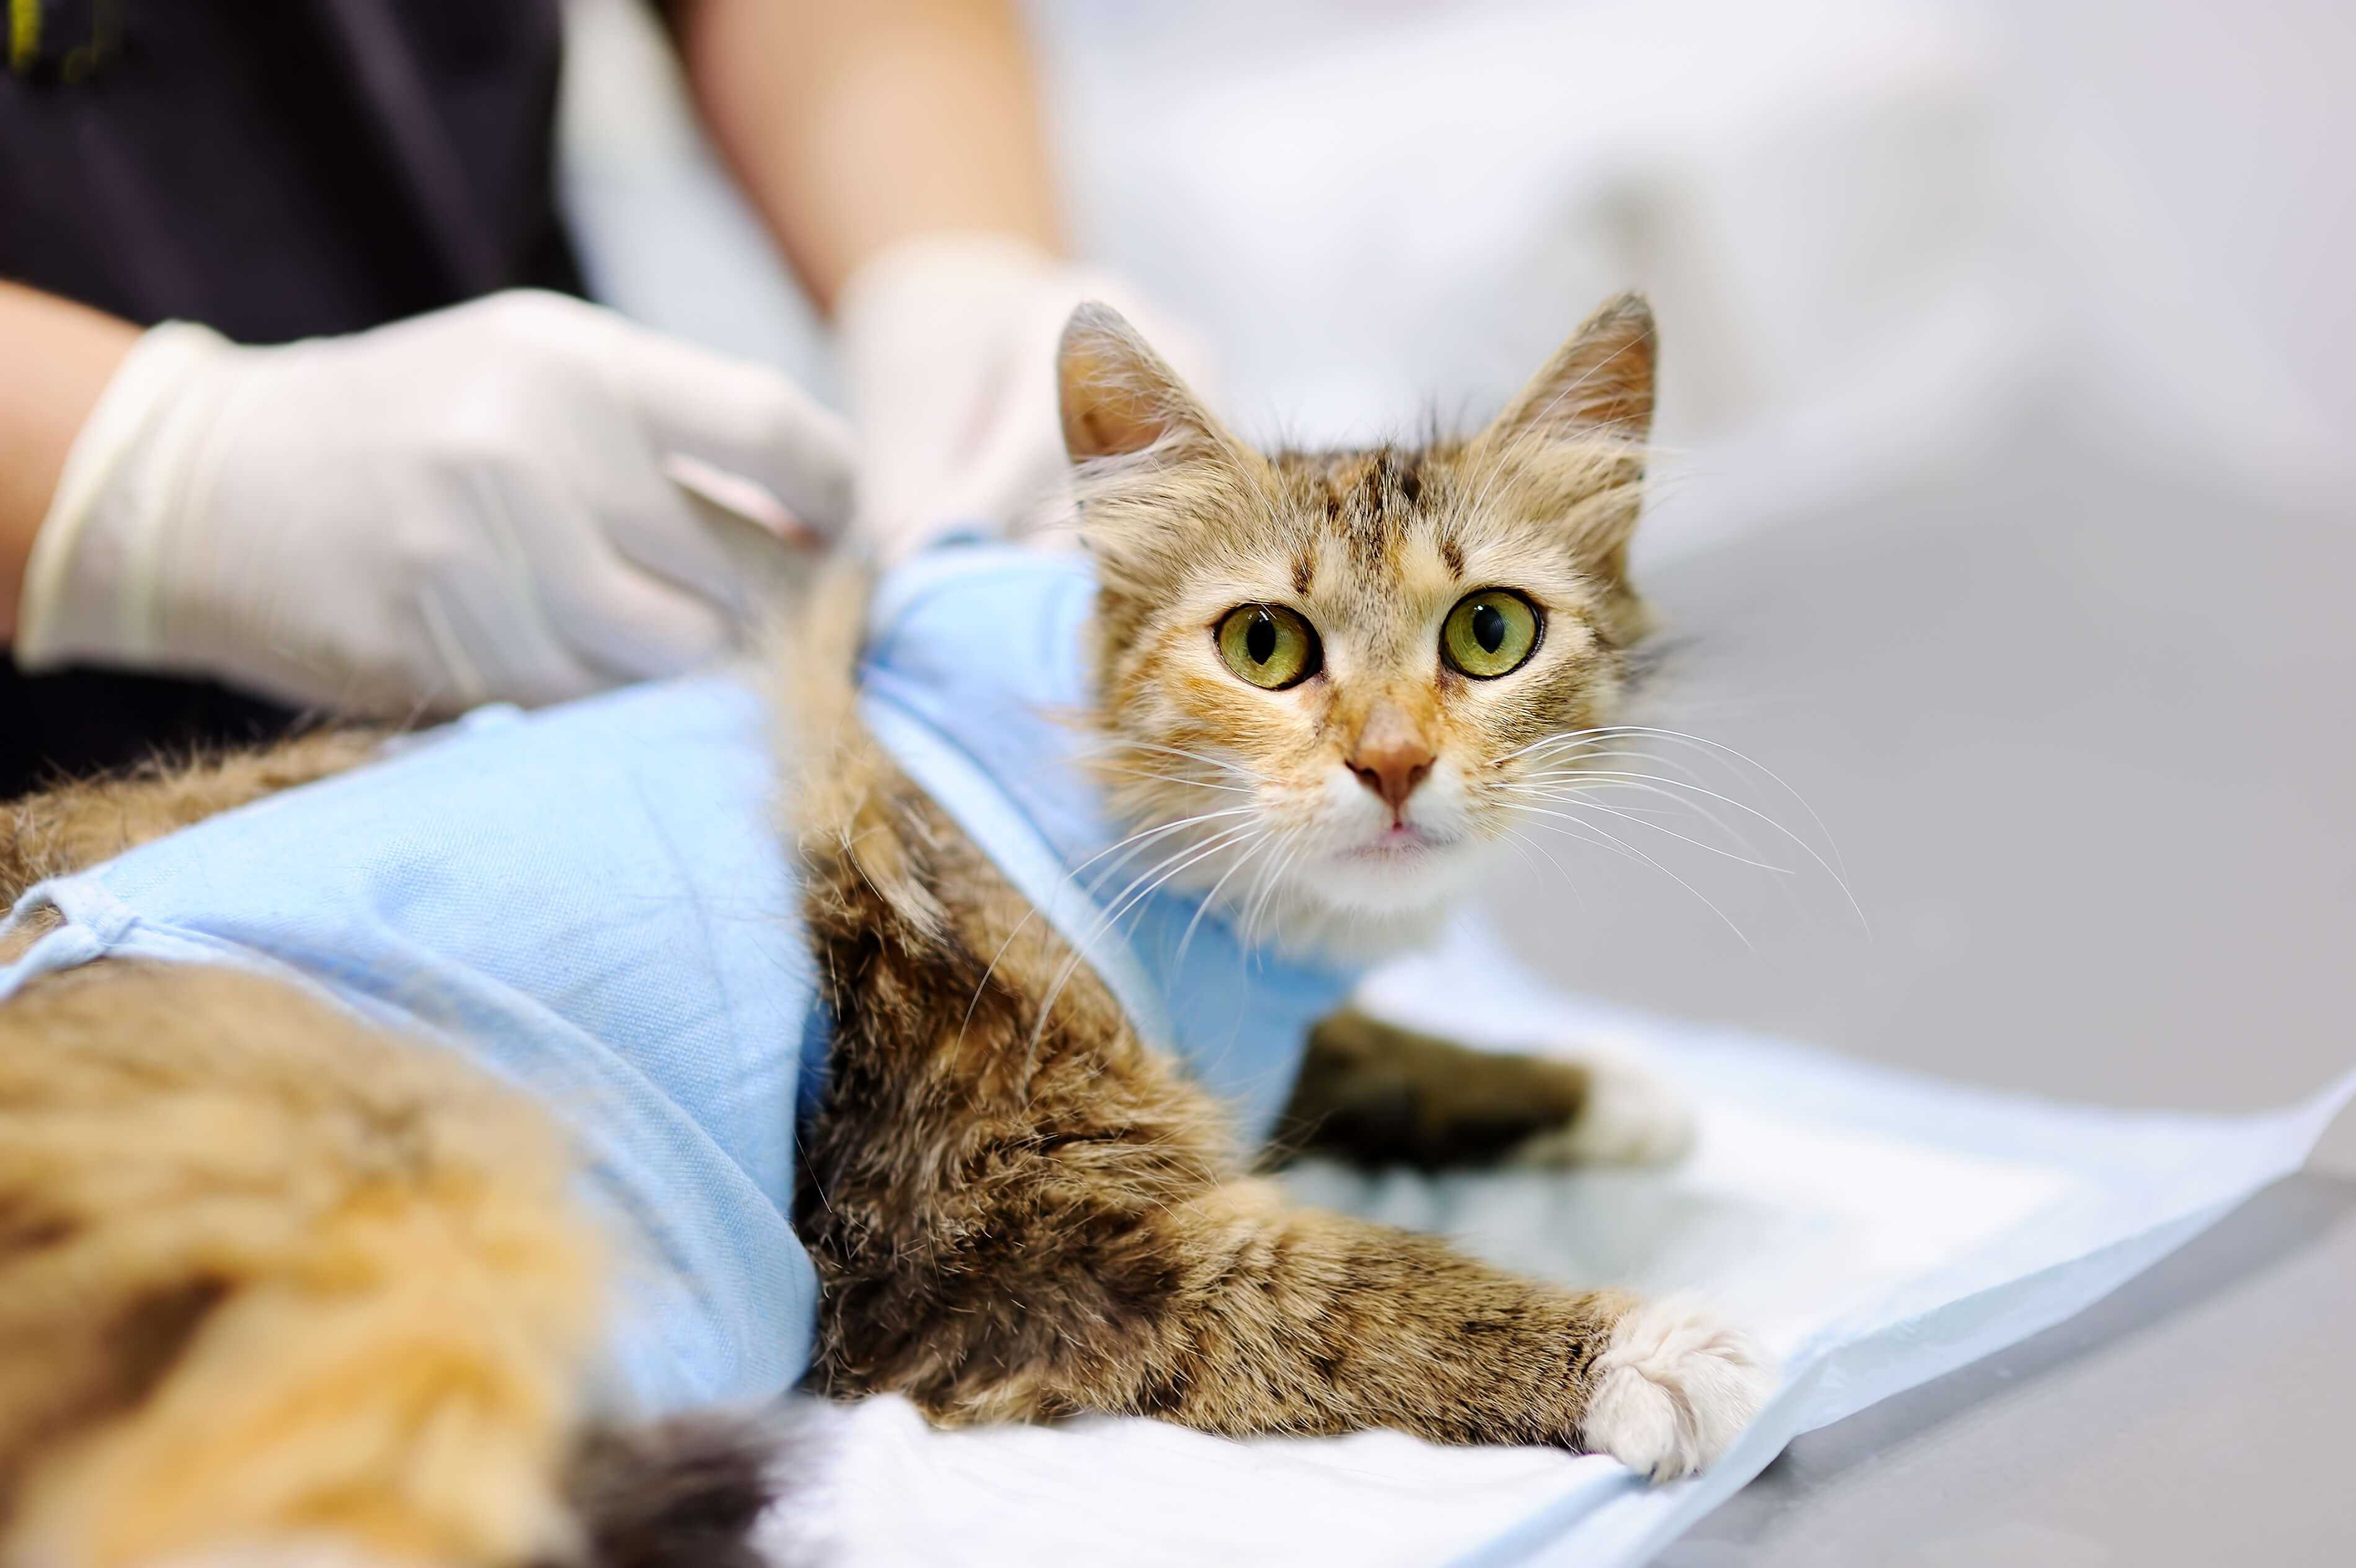 Всё о стерилизации кошек: виды операции, методы проведения, можно ли делать беременной кошке, как подготовить животное и как ухаживать за ним после операции, отзывы